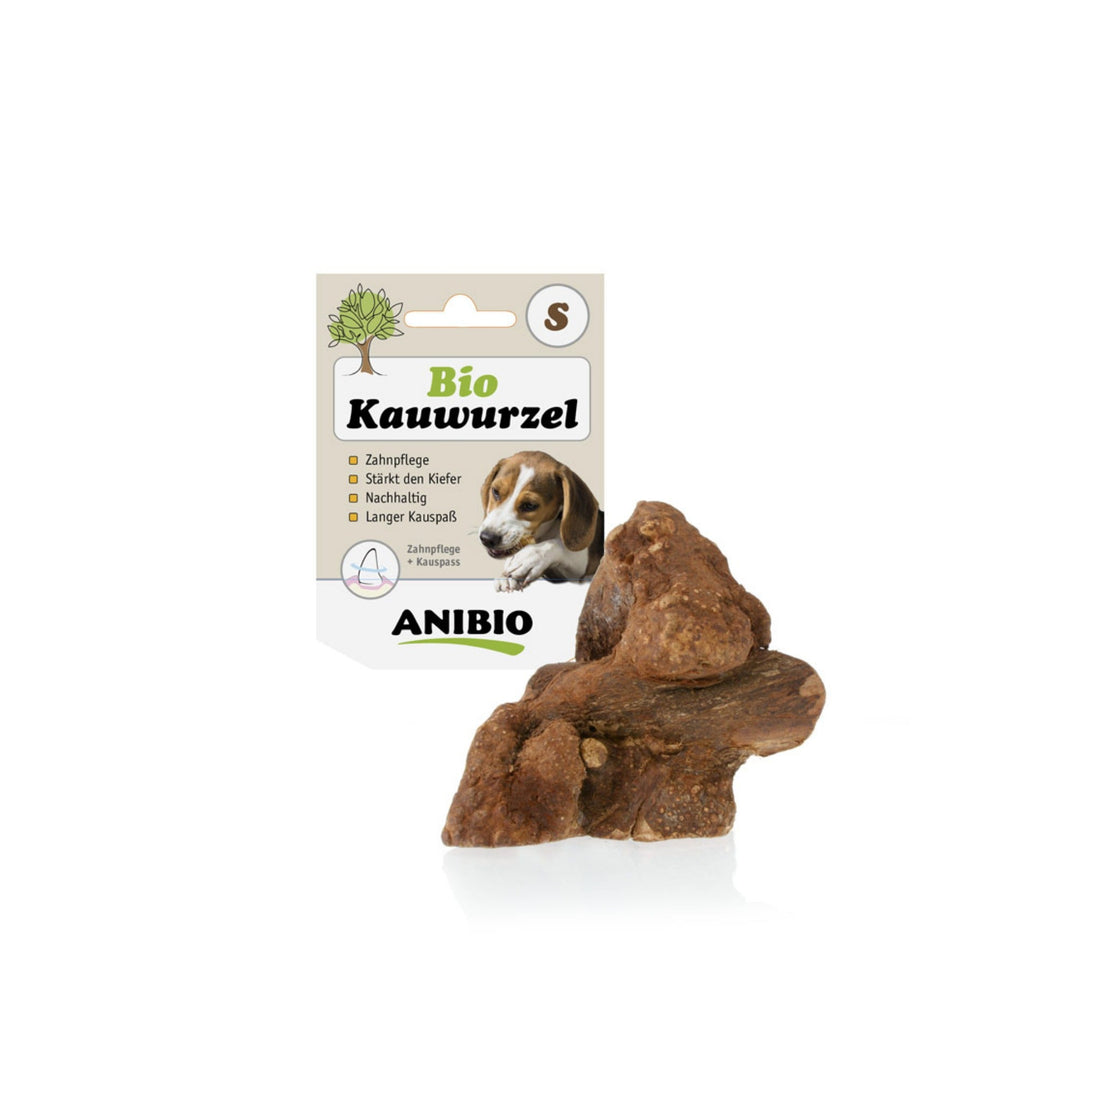 ANIBIO BIO Kauwurzel für Hunde - Woofshack